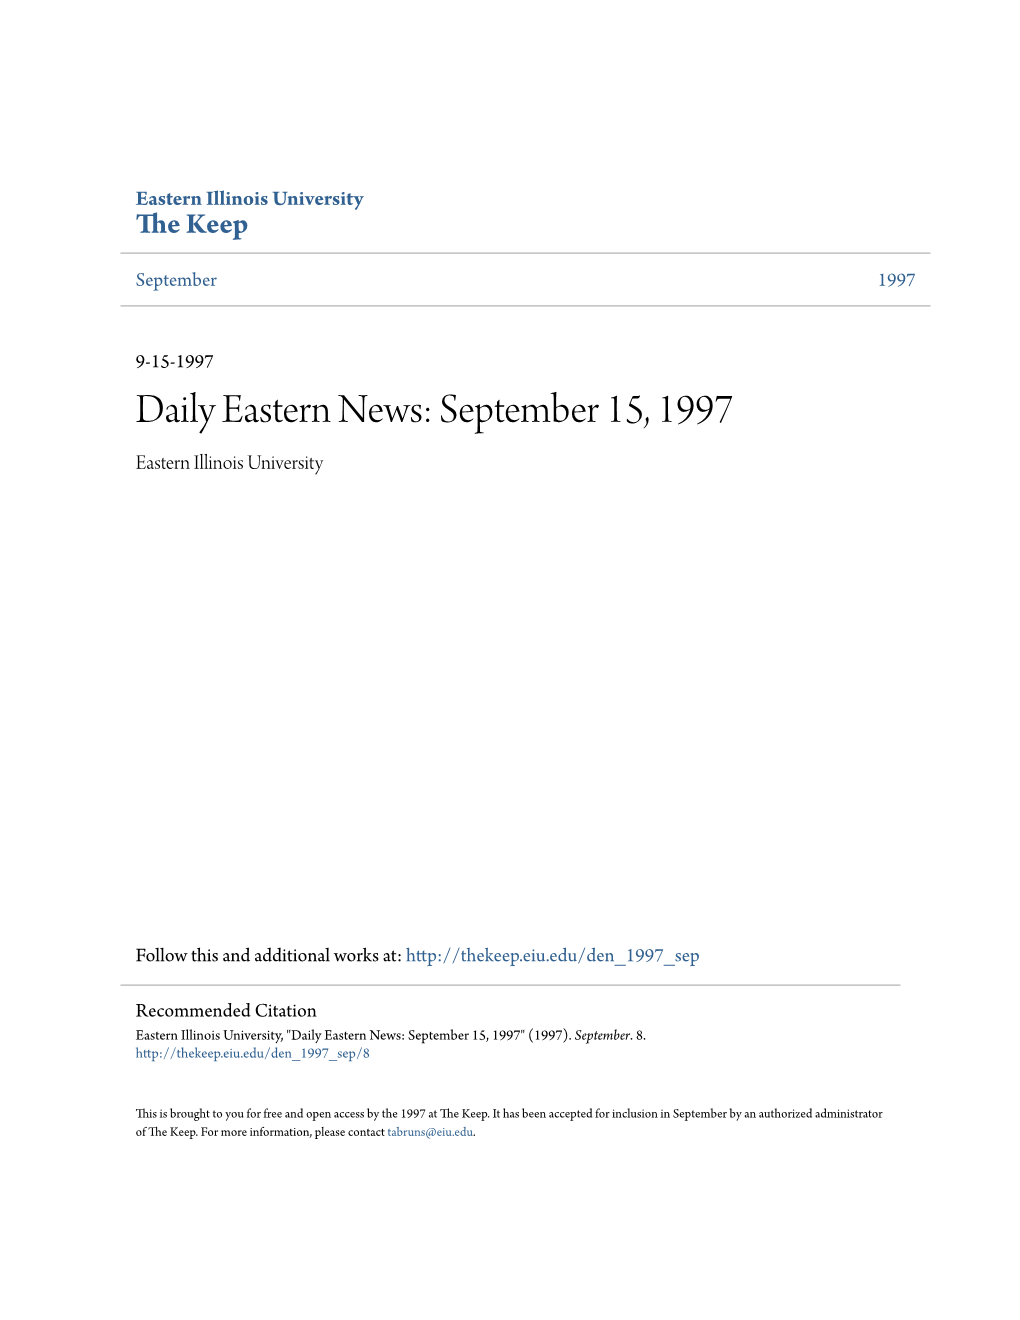 Daily Eastern News: September 15, 1997 Eastern Illinois University